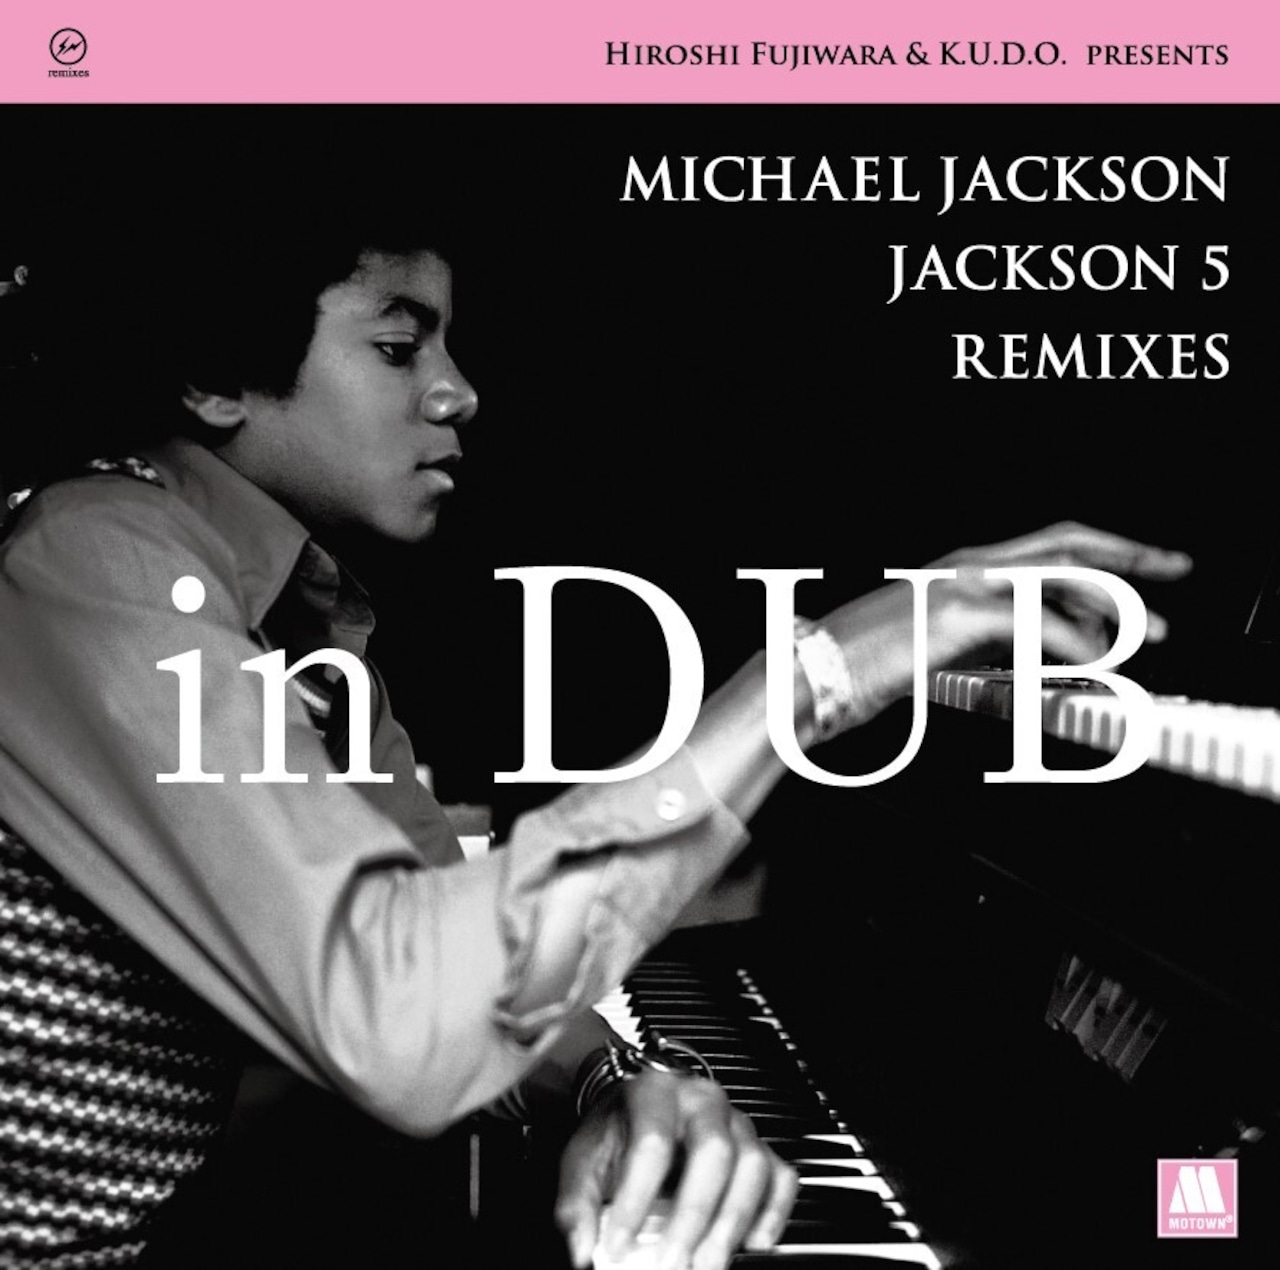 【限定盤】マイケル・ジャクソン「MICHAEL JACKSON / JACKSON 5 - HIROSHI FUJIWARA & K.U.D.O. PRESENTS MICHAEL JACKSON / JACKSON 5 REMIXES in DUB」アナログ盤（12インチ）